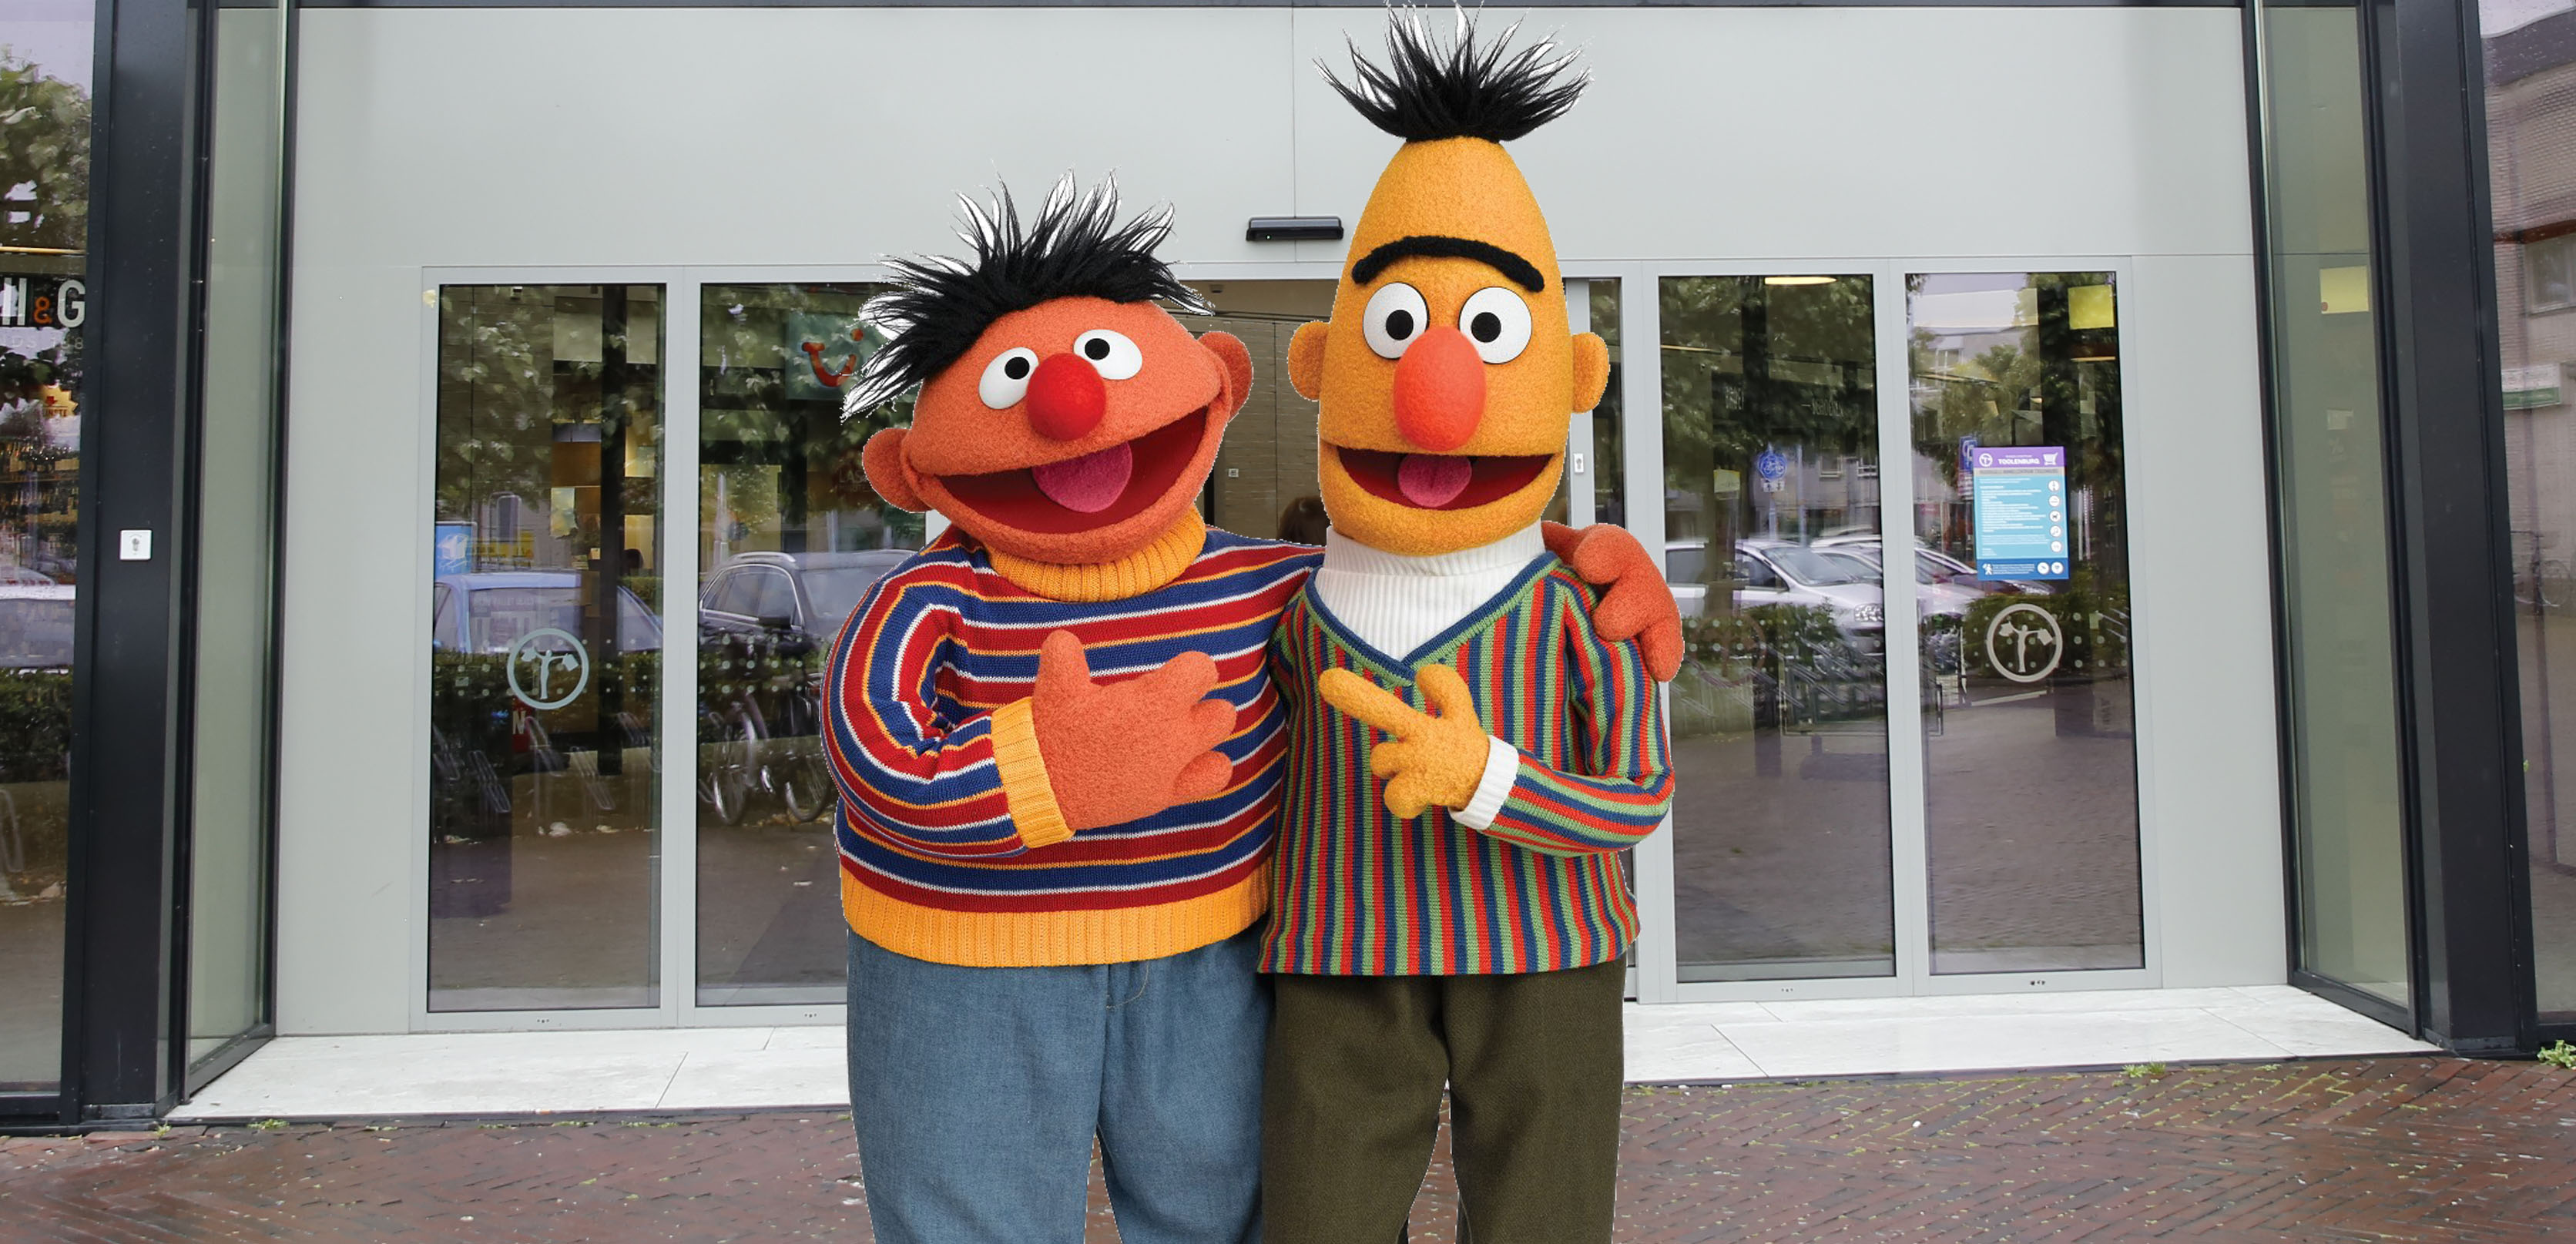 7 september 2019: Bert en Ernie meet greet